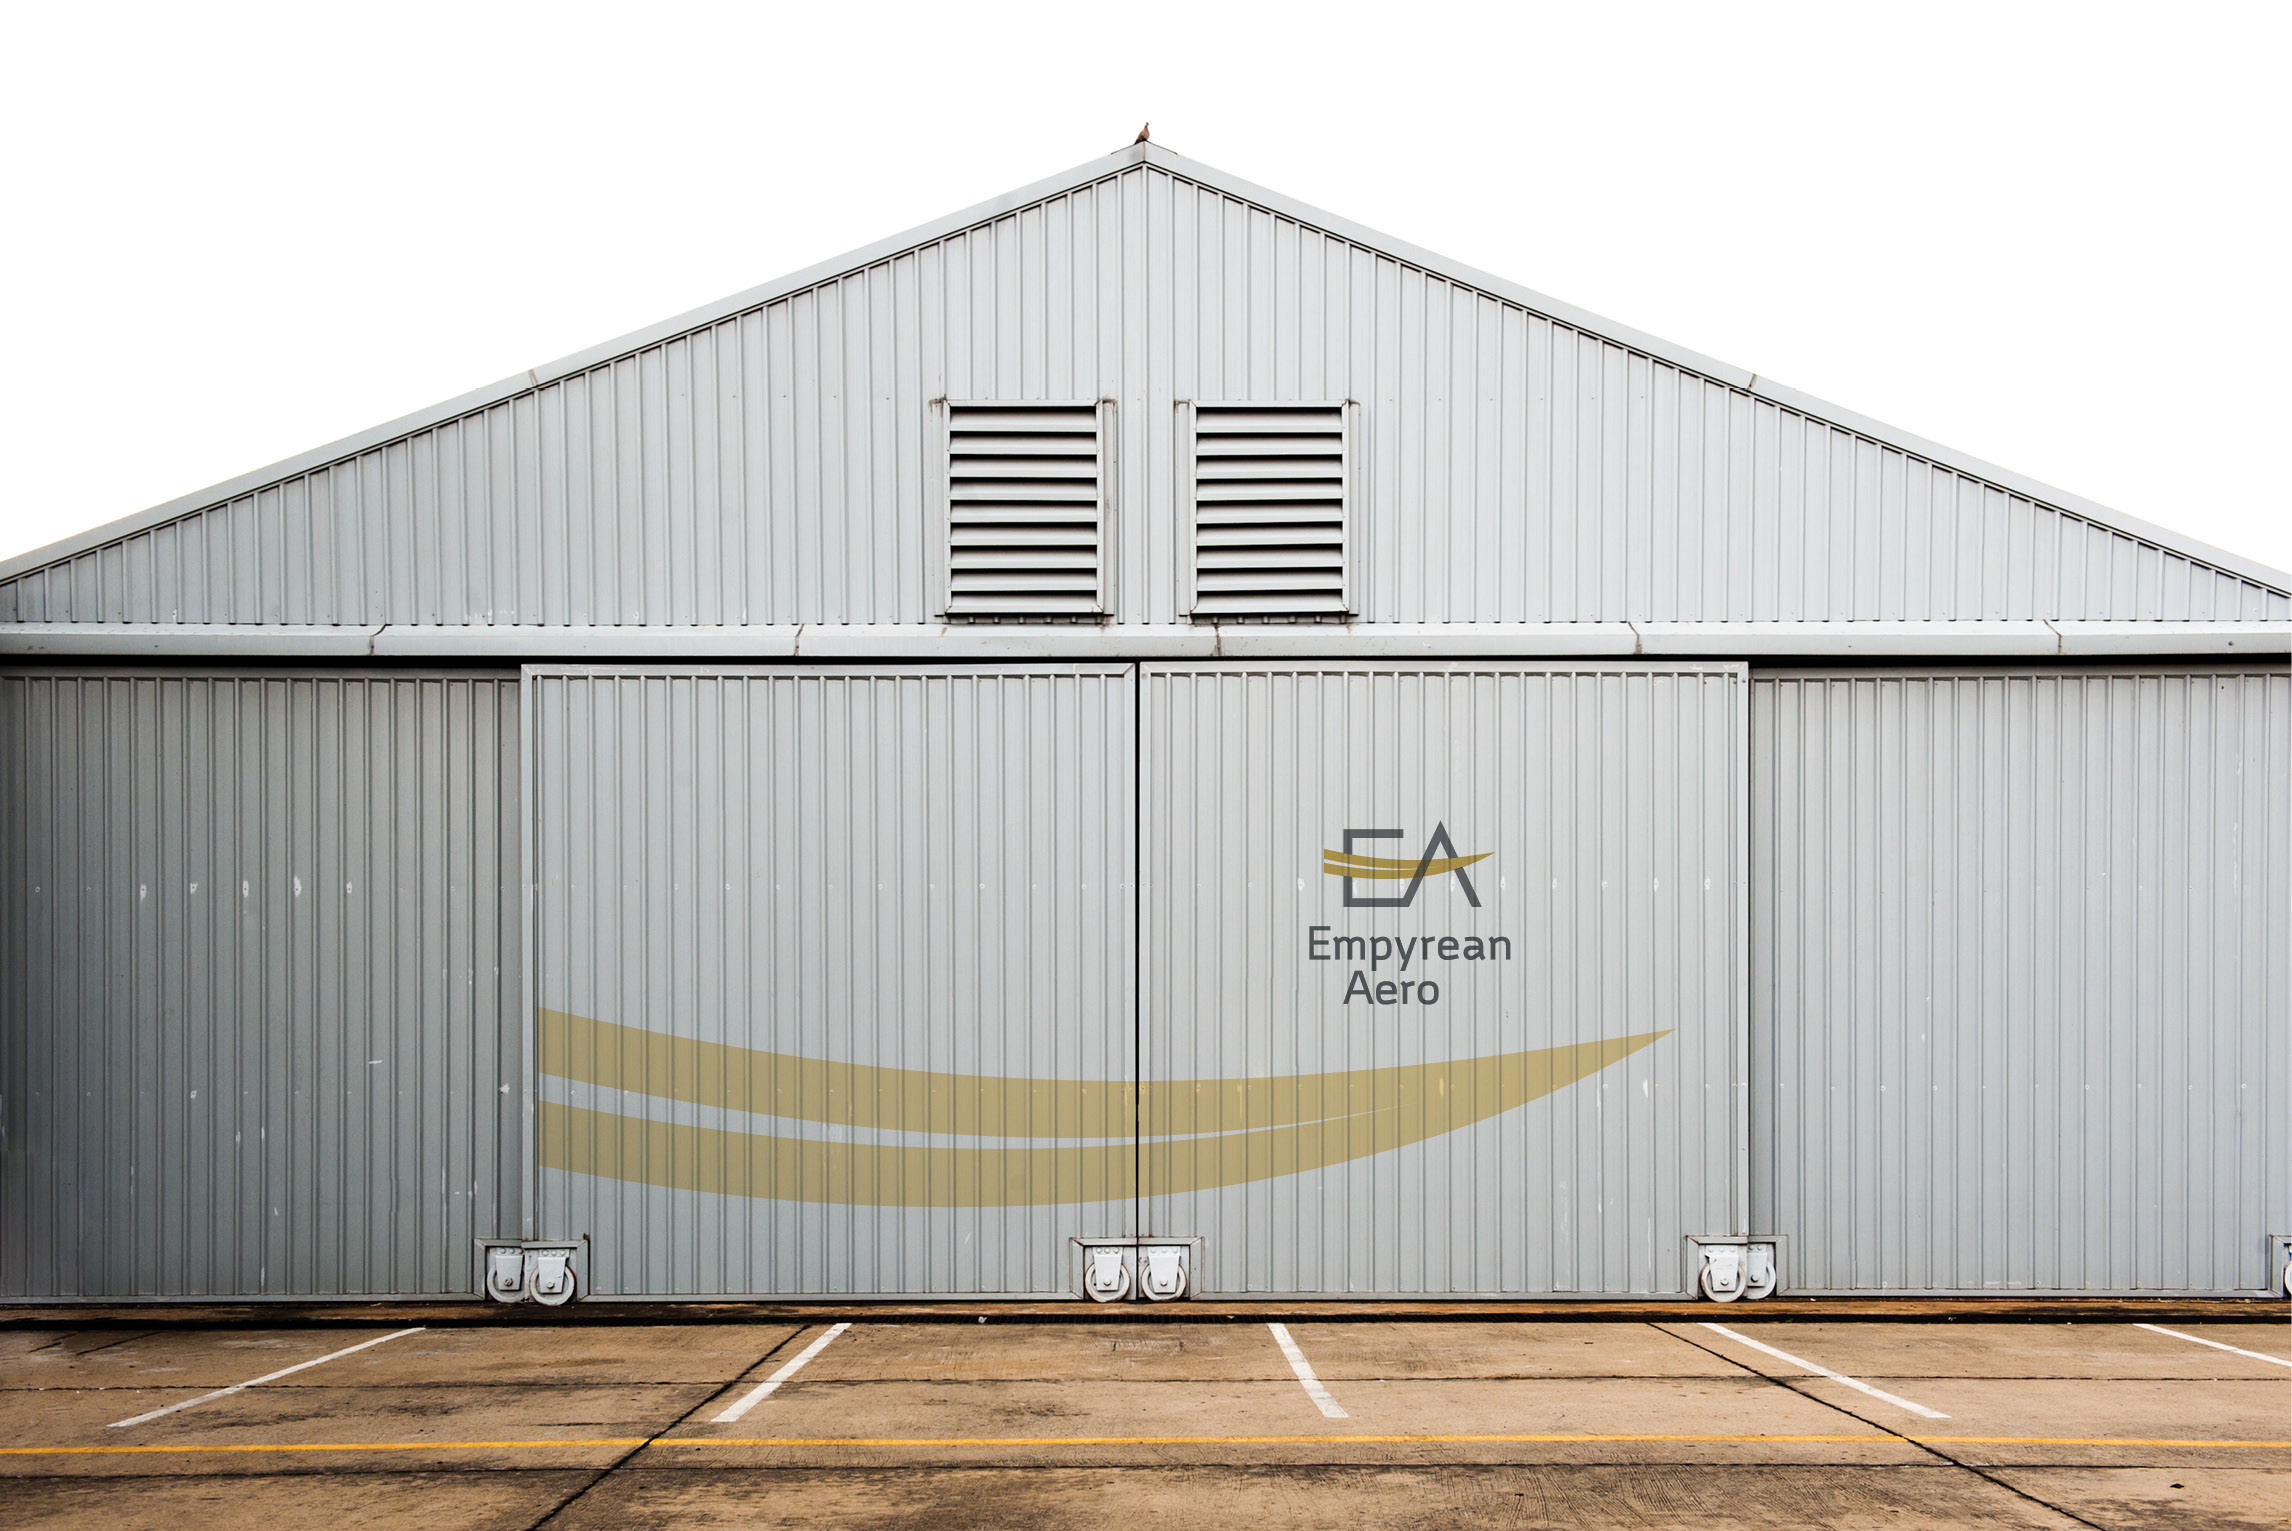 Mockup of hangar with Empyrean Aero logo on doors